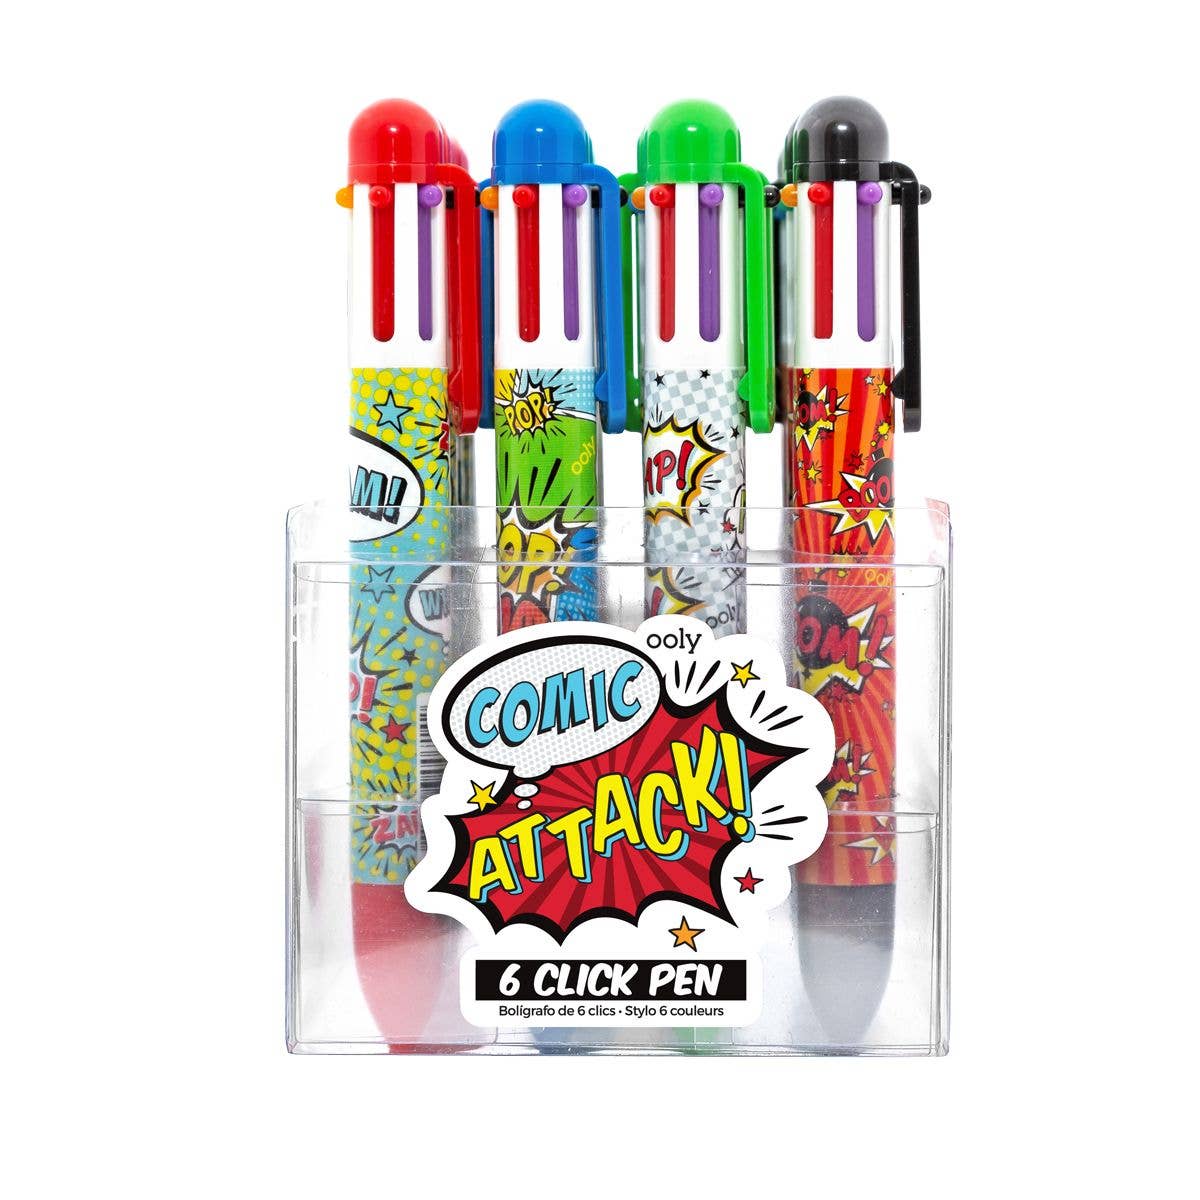 Comic Attack 6 Click Pens